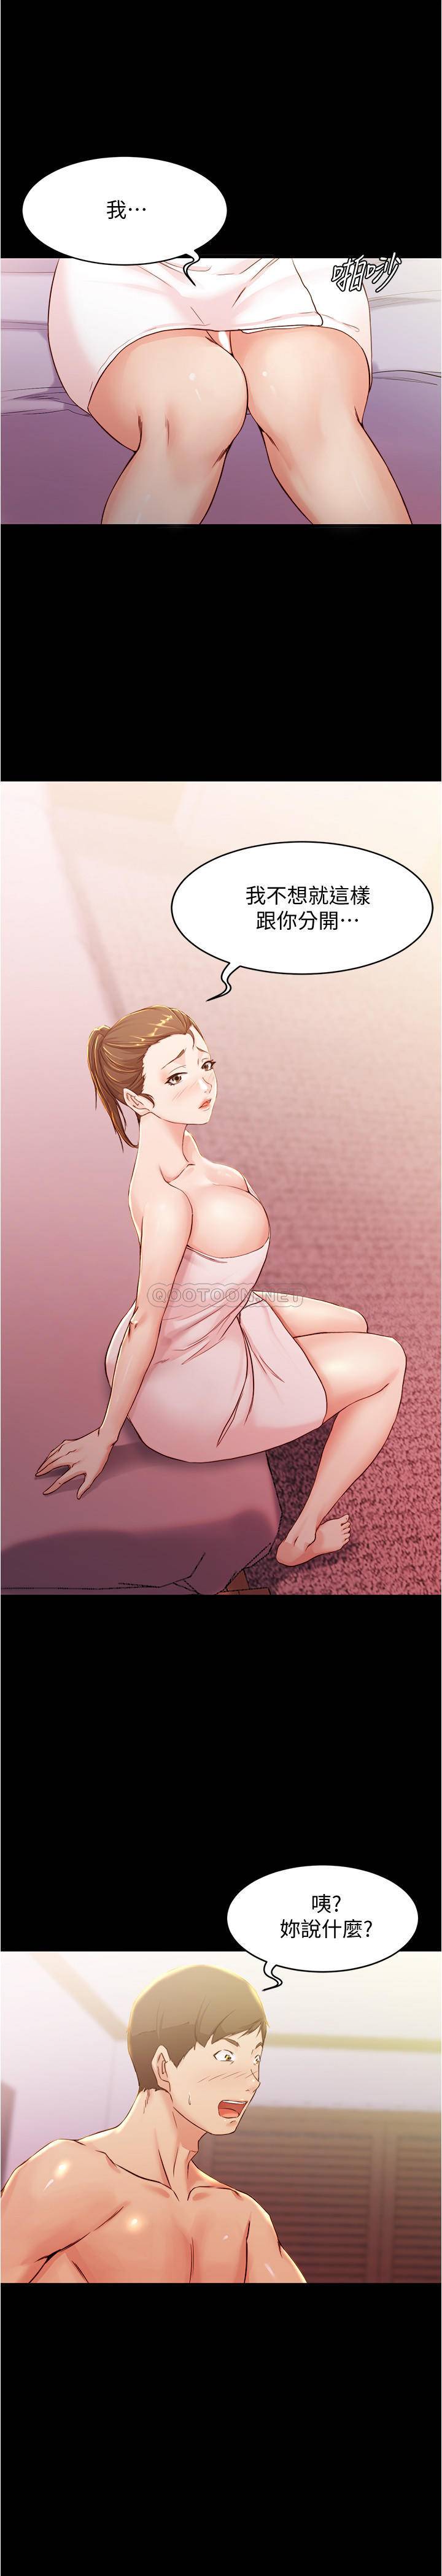 韩国污漫画 小褲褲筆記 第26话 - 为了更令人满意的性爱 24